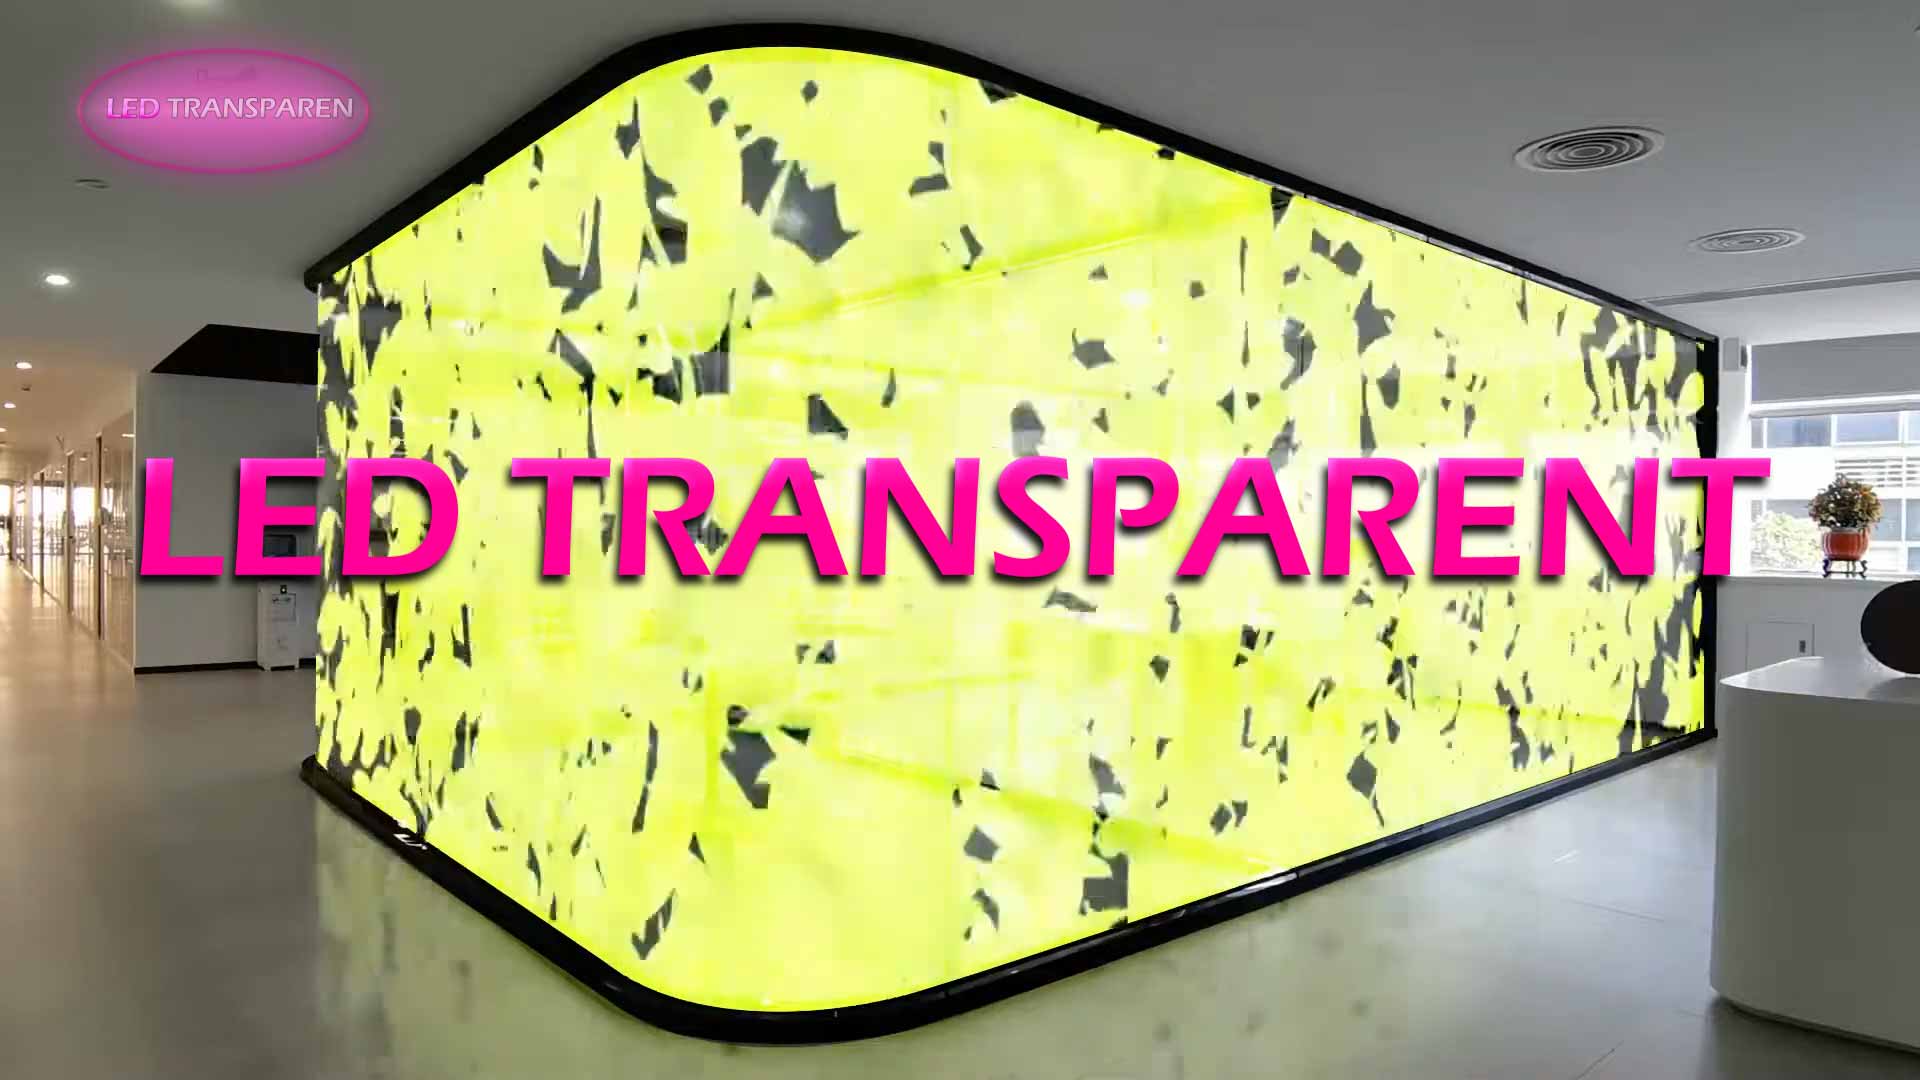 نمایشگرهای فرانما یا همان ال ای دی ترنسپرنت (LED TRANSPARENT) را به محصولات واحد نمایشگر های ۳ بعدی-۰۰۳